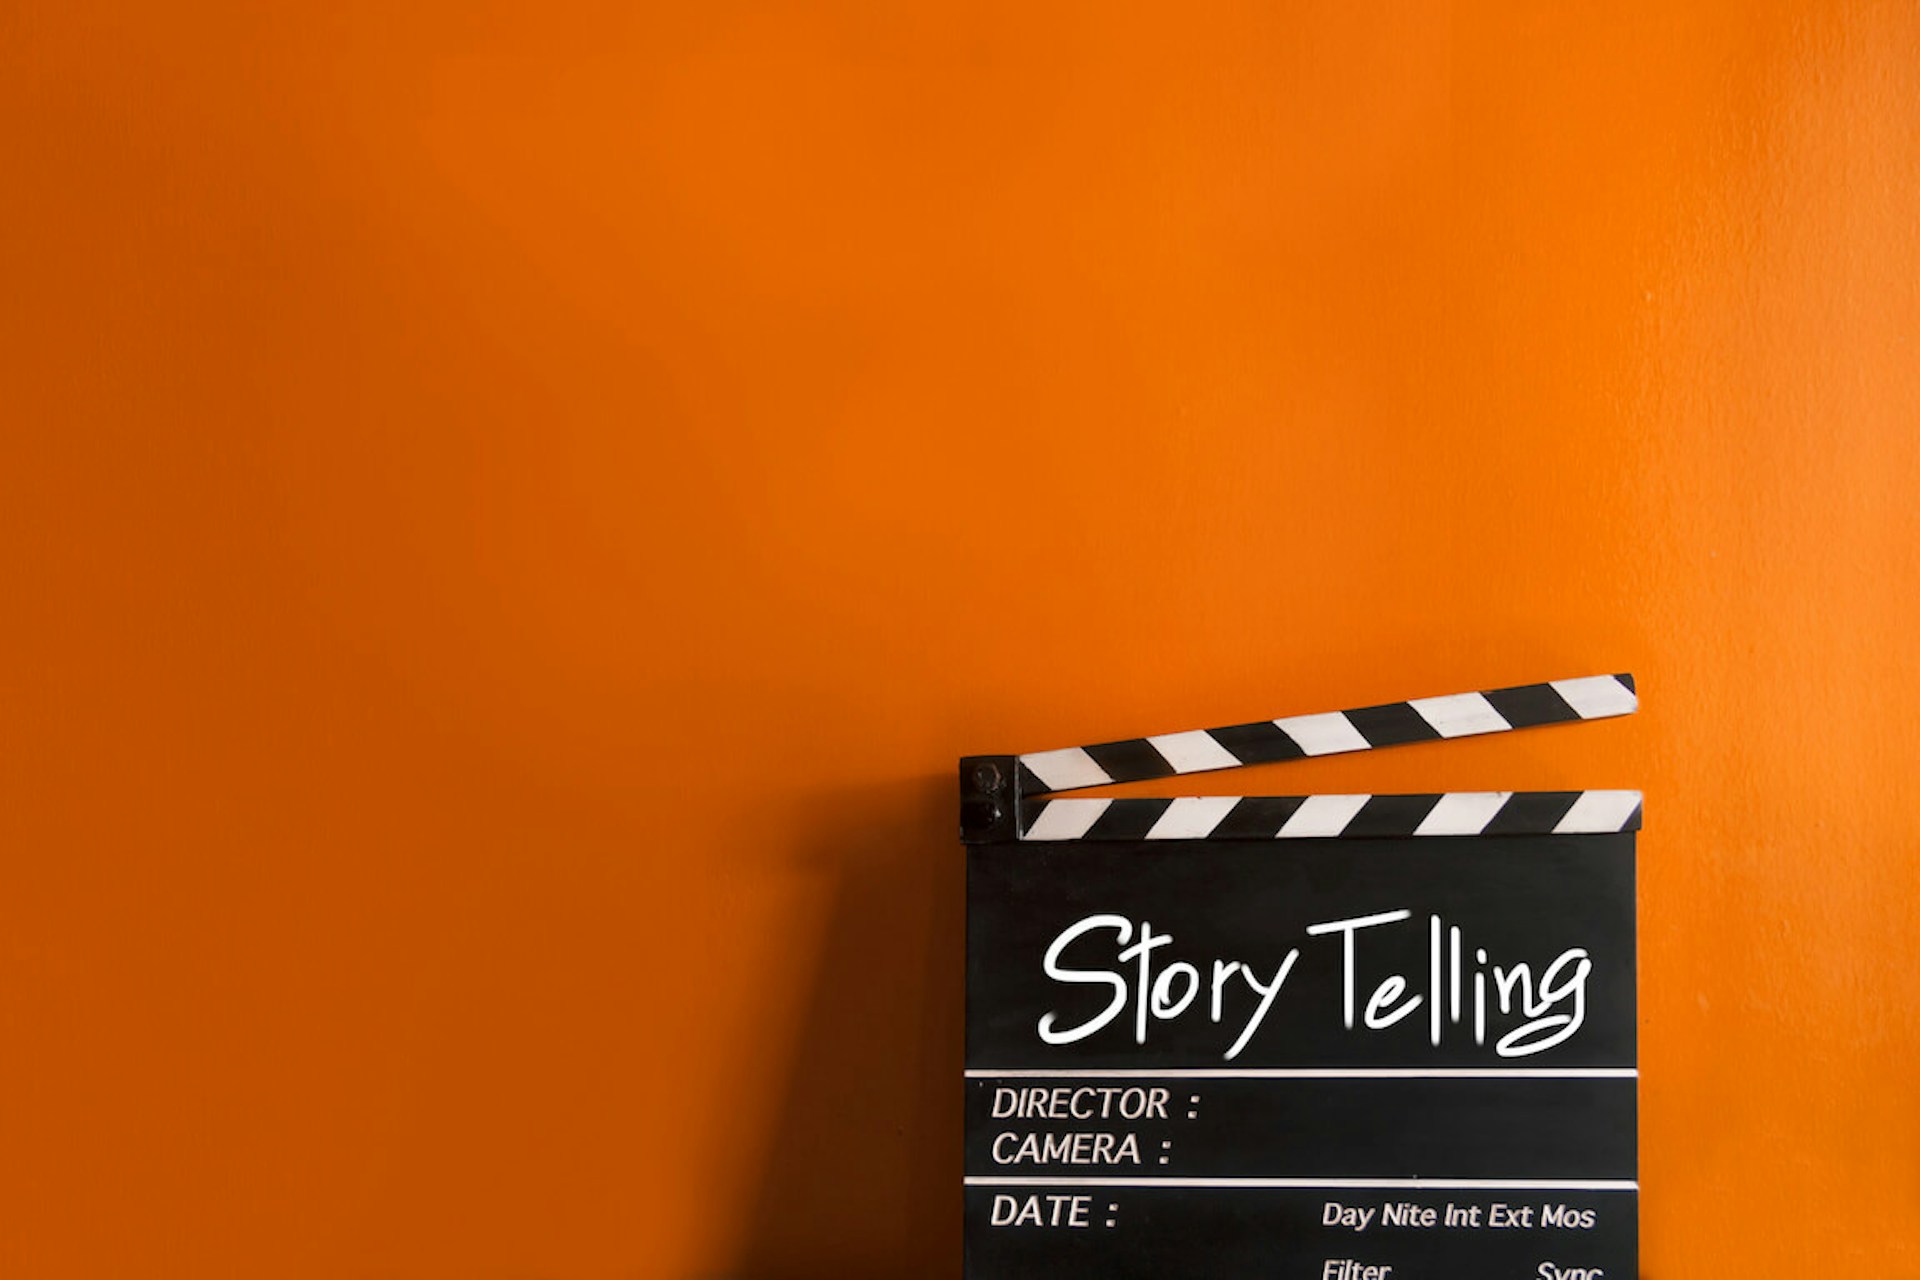 Eine Filmklappe mit der Aufschrift "Story Telling" auf einem orangenen Hintergrund